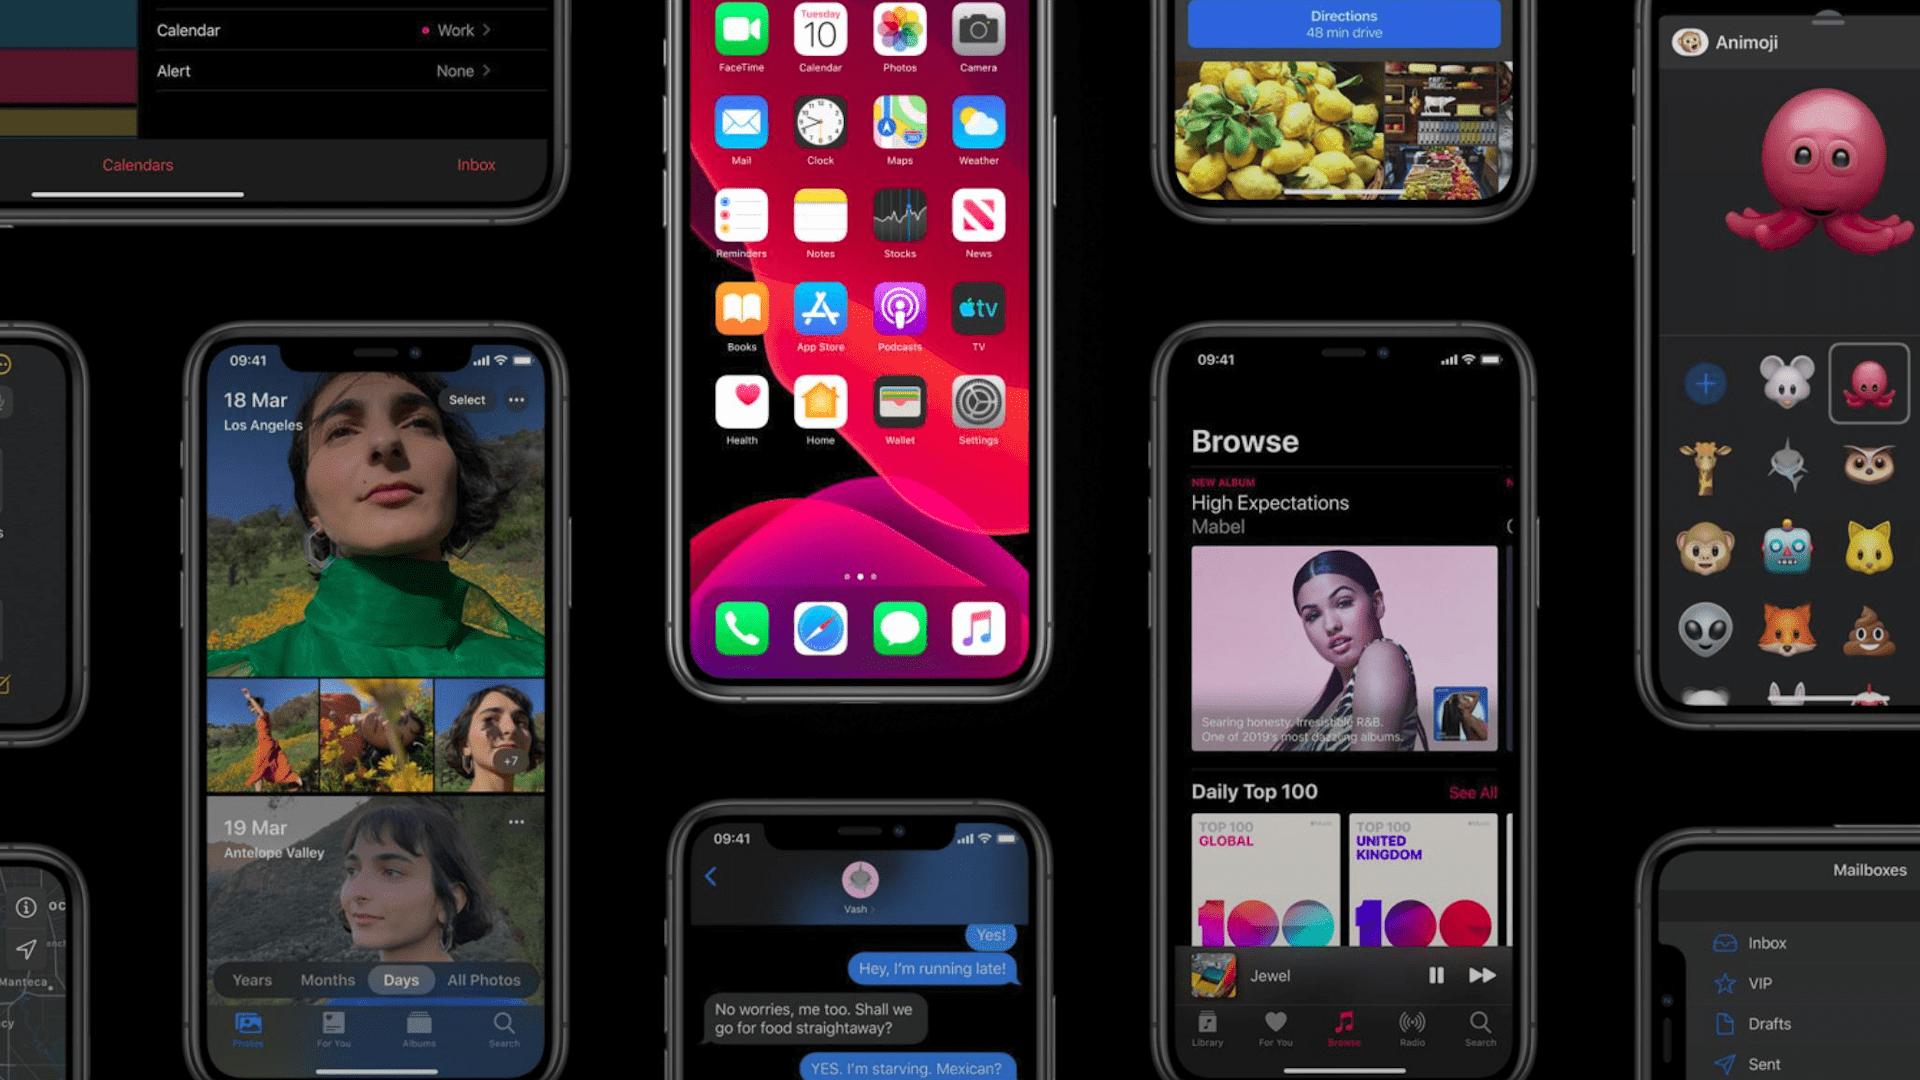 iOS showcase in iPhones